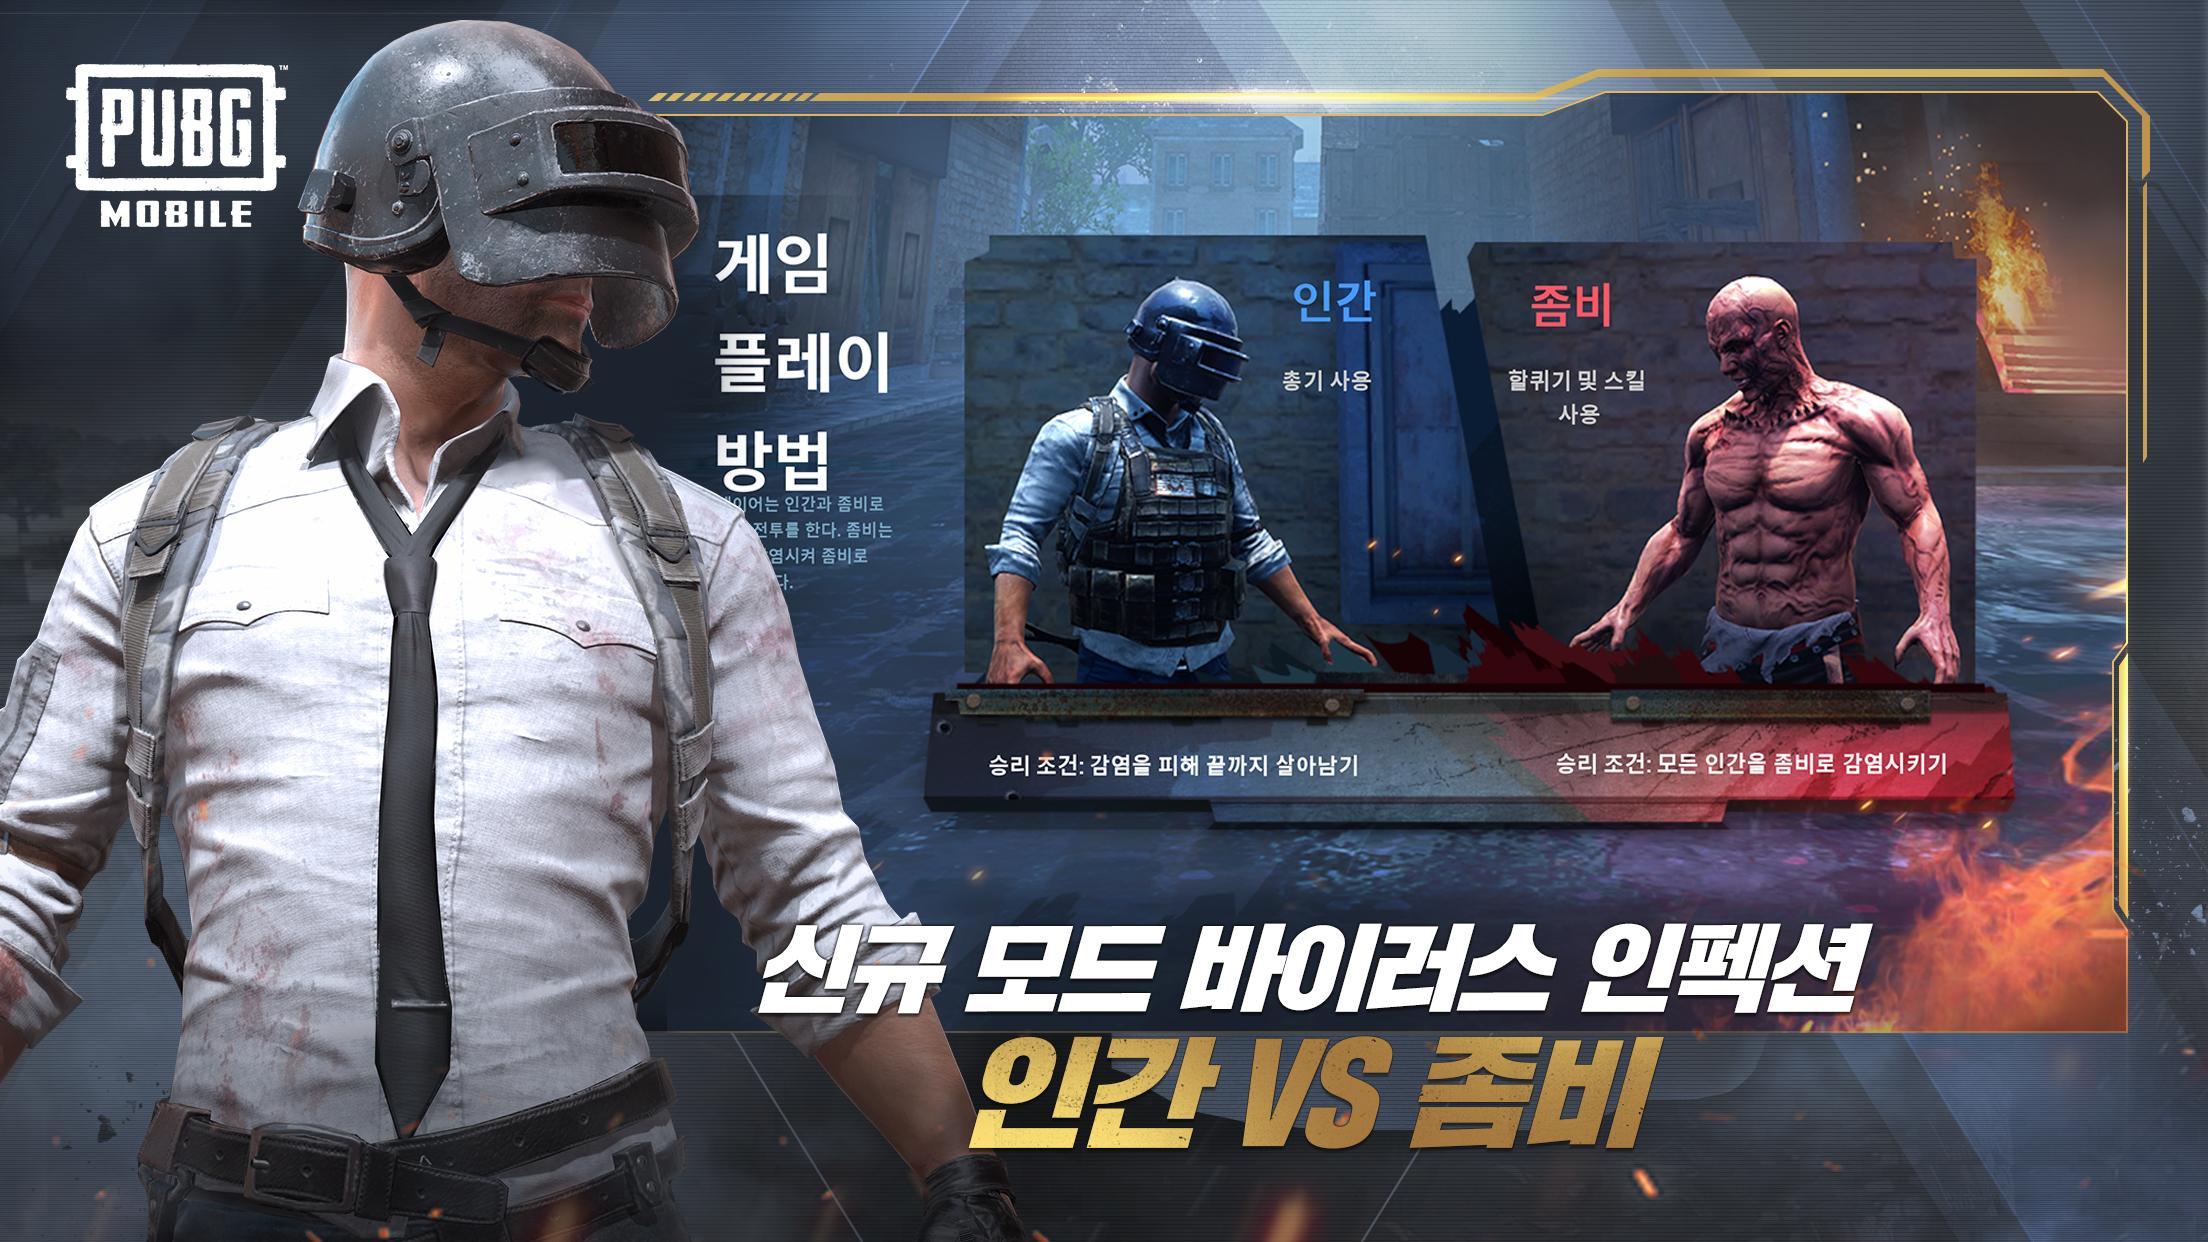 تحميل لعبة بوبجي النسخة الكورية Pubg Mobile Korea 0 19 0 Update